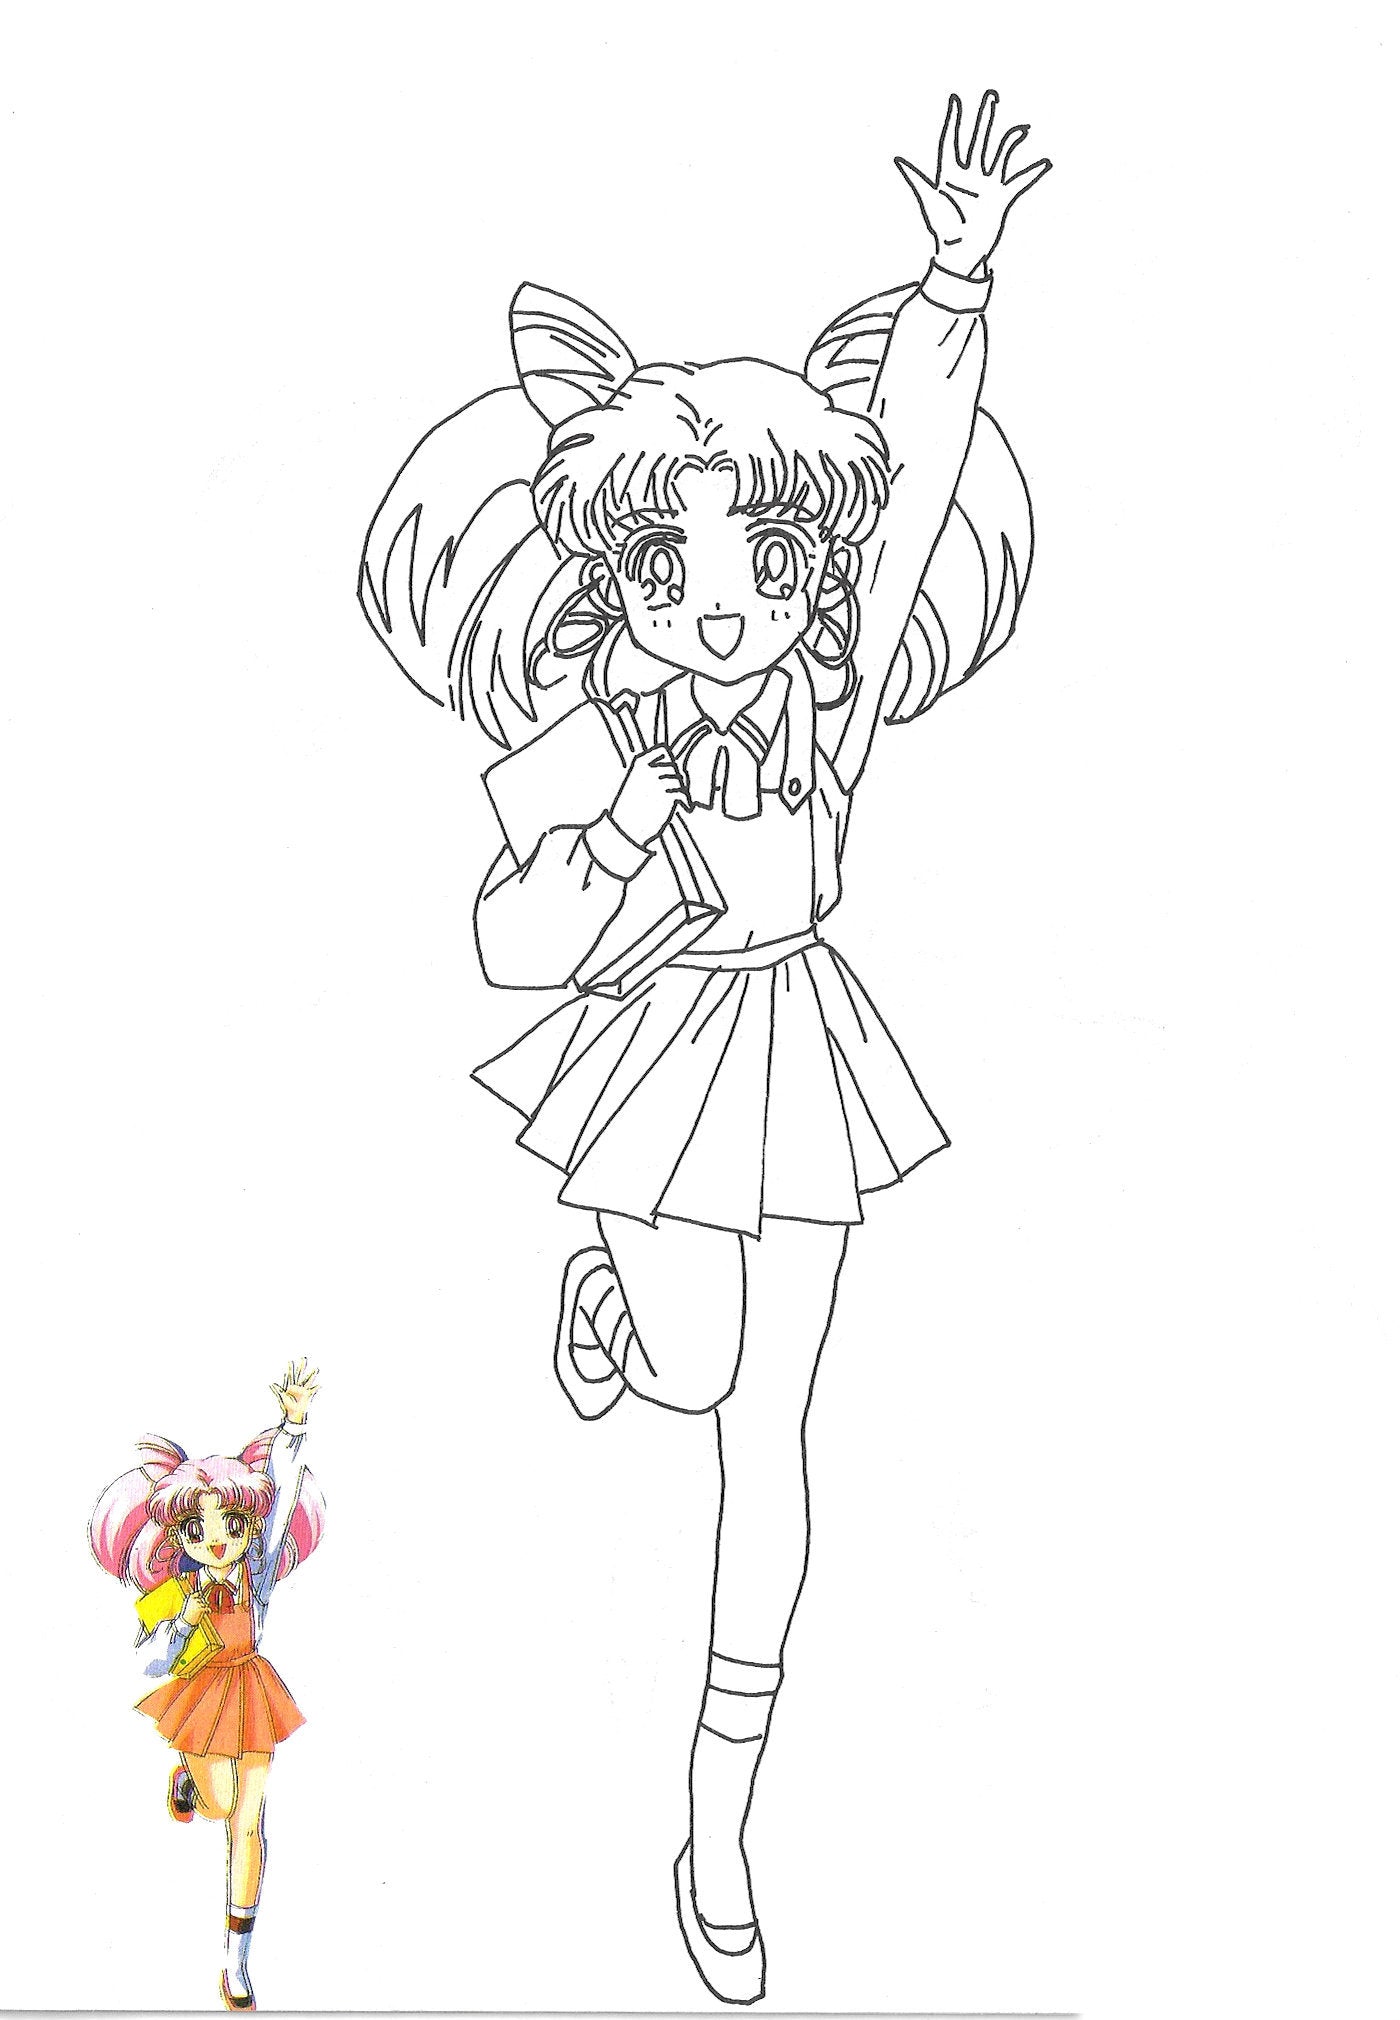 Sailor moon coloring pages â avane shop